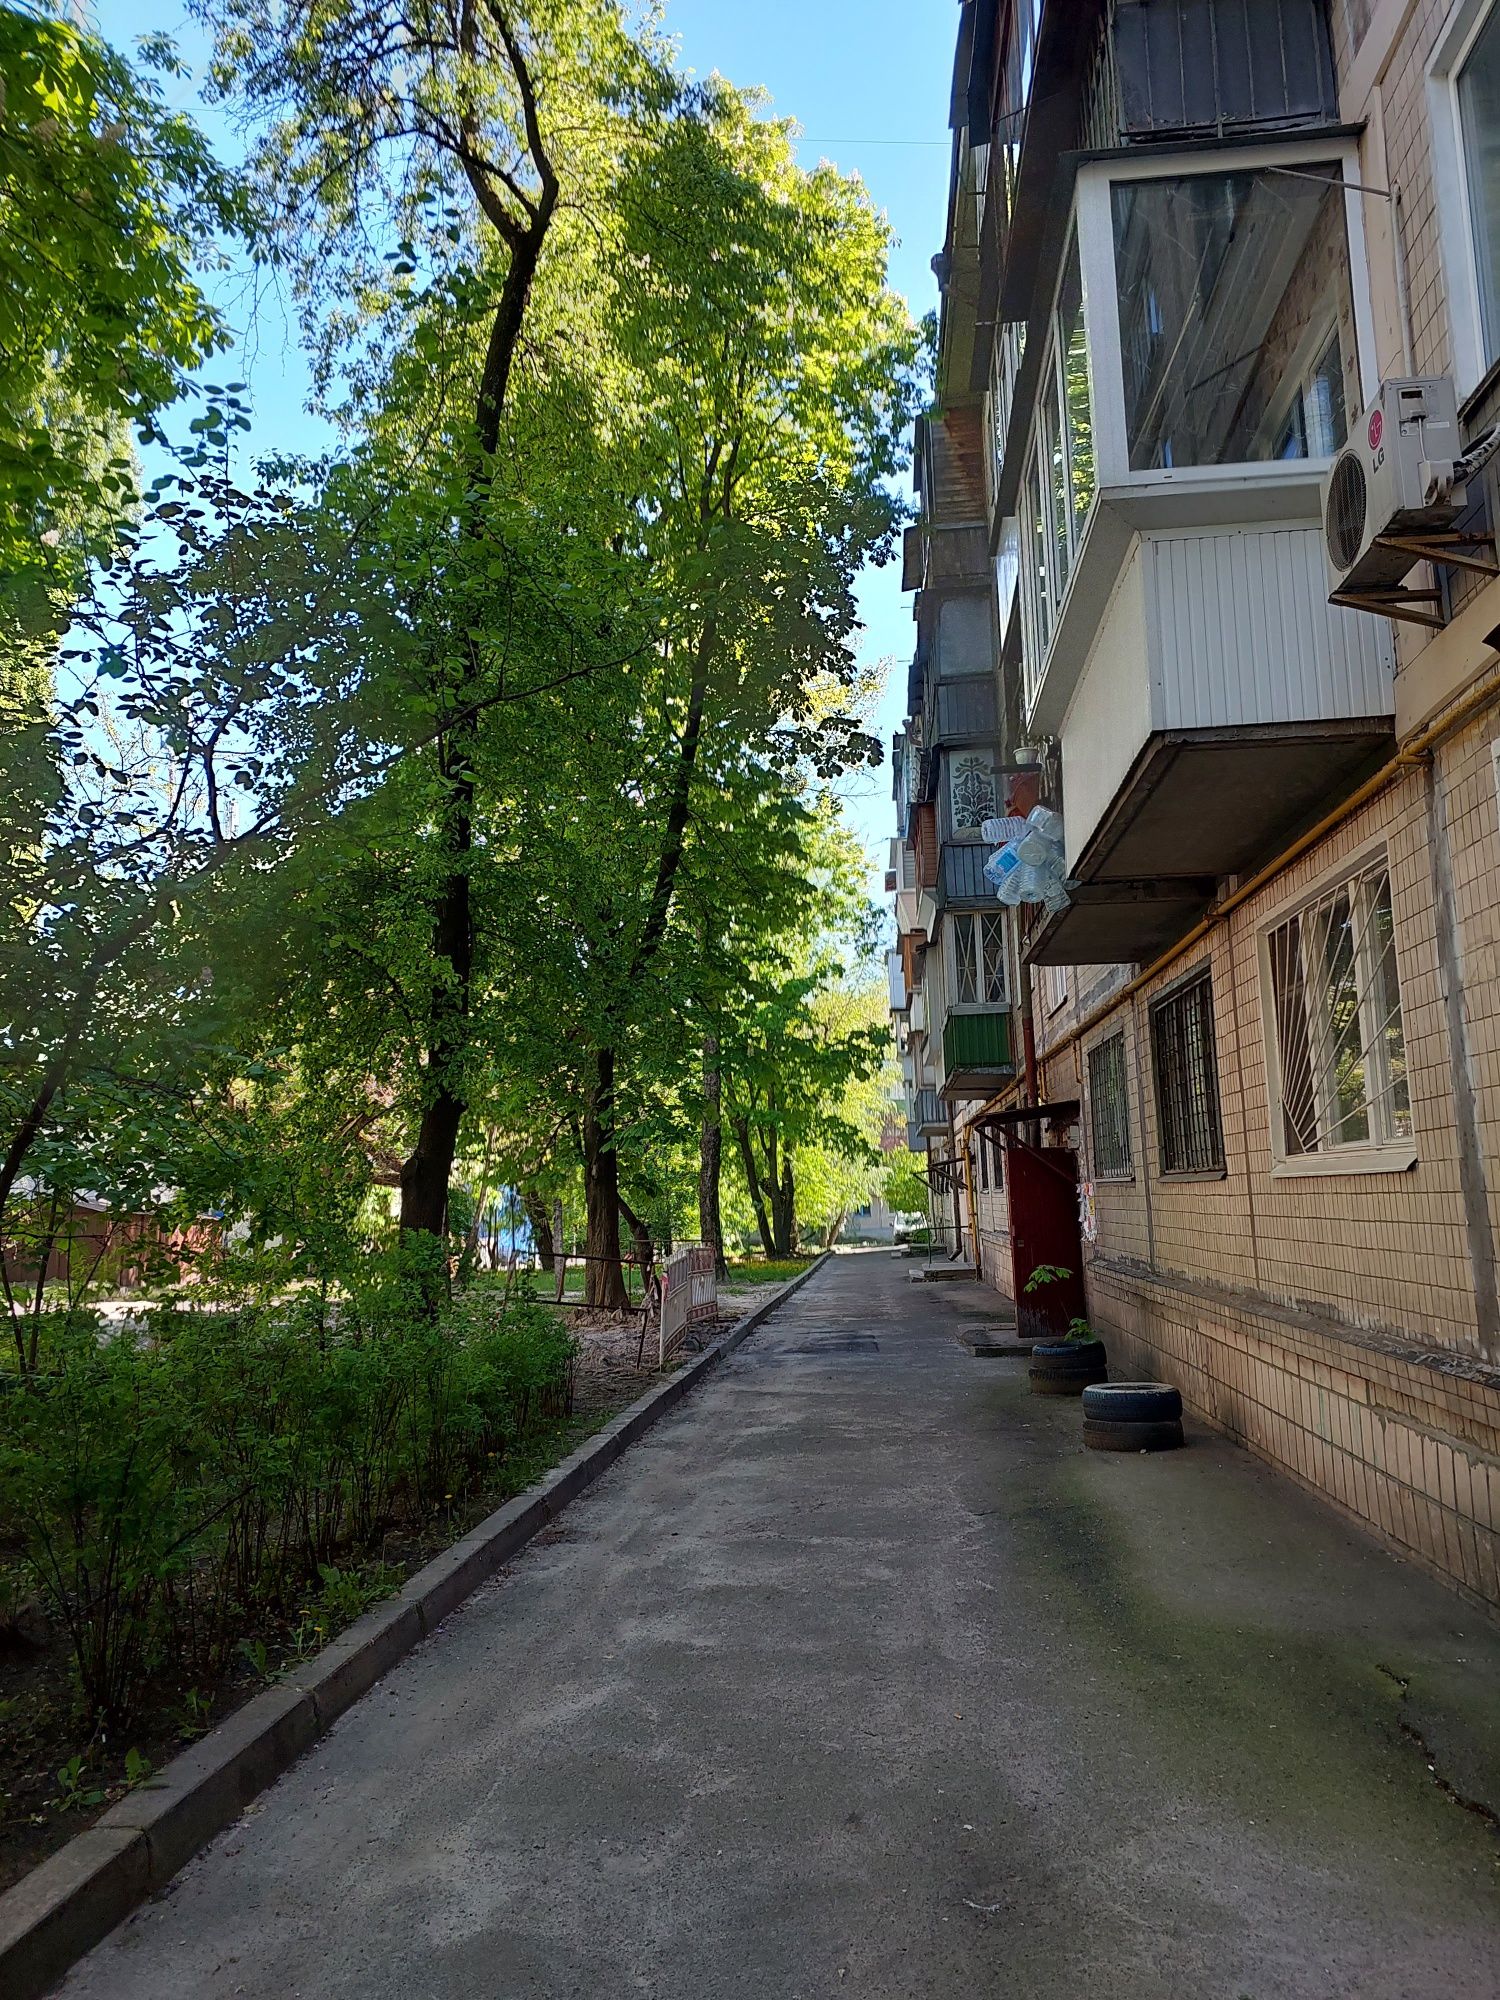 Продам квартиру ул. Героев Севастополя 10а ,светлая, тёплая.